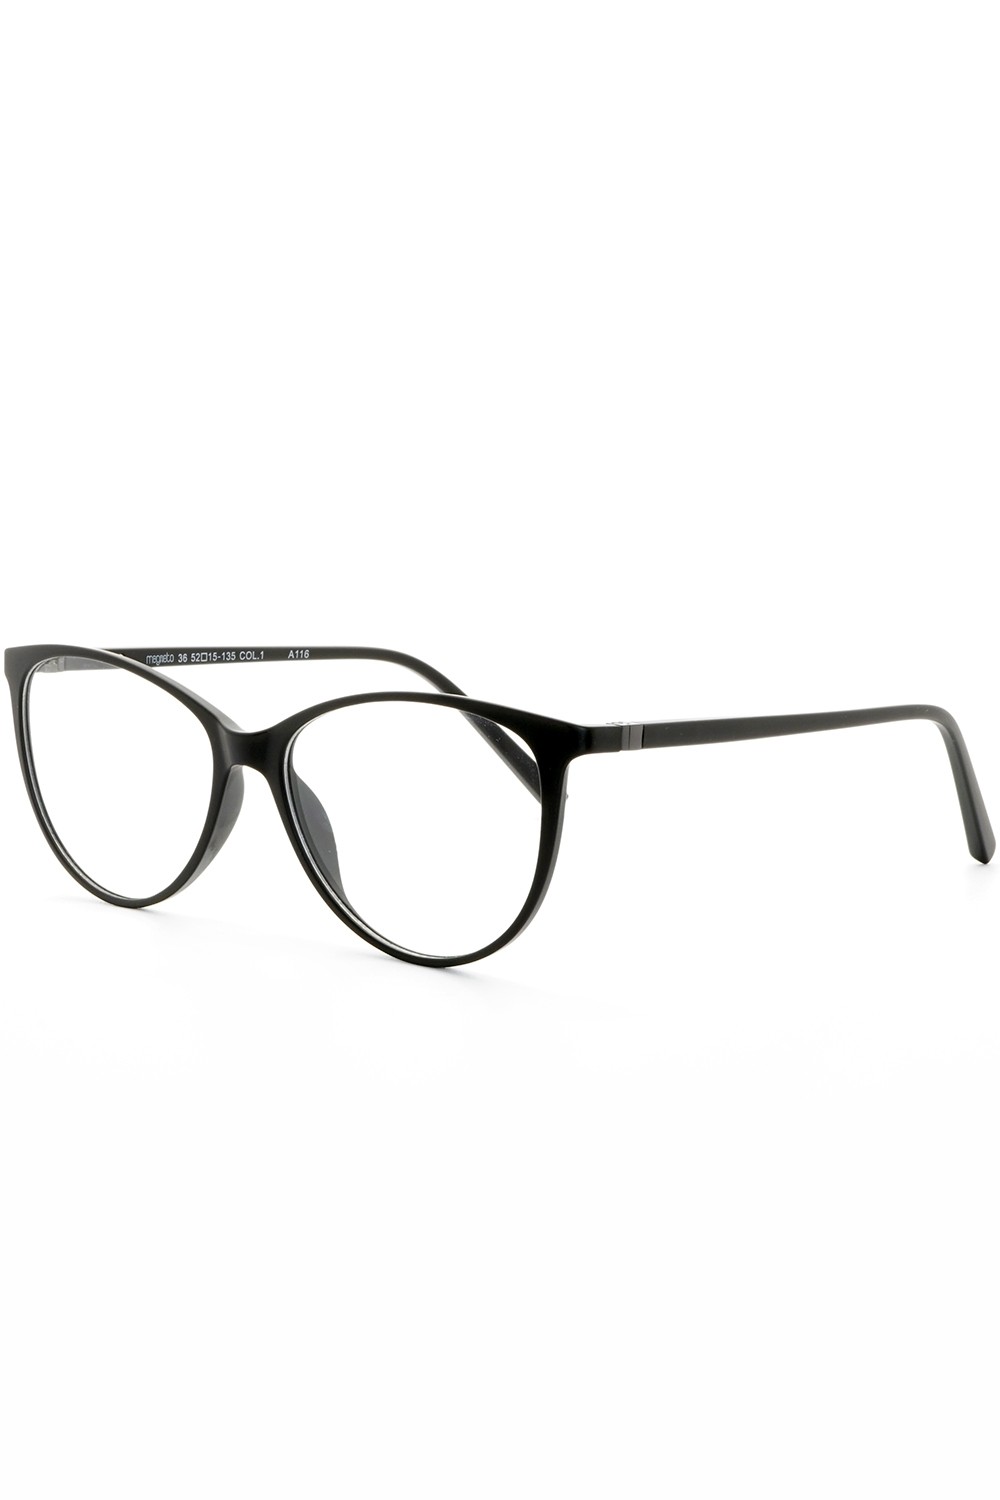 TF Occhiali - Occhiali da vista in plastica con clip solare cat eye per donna